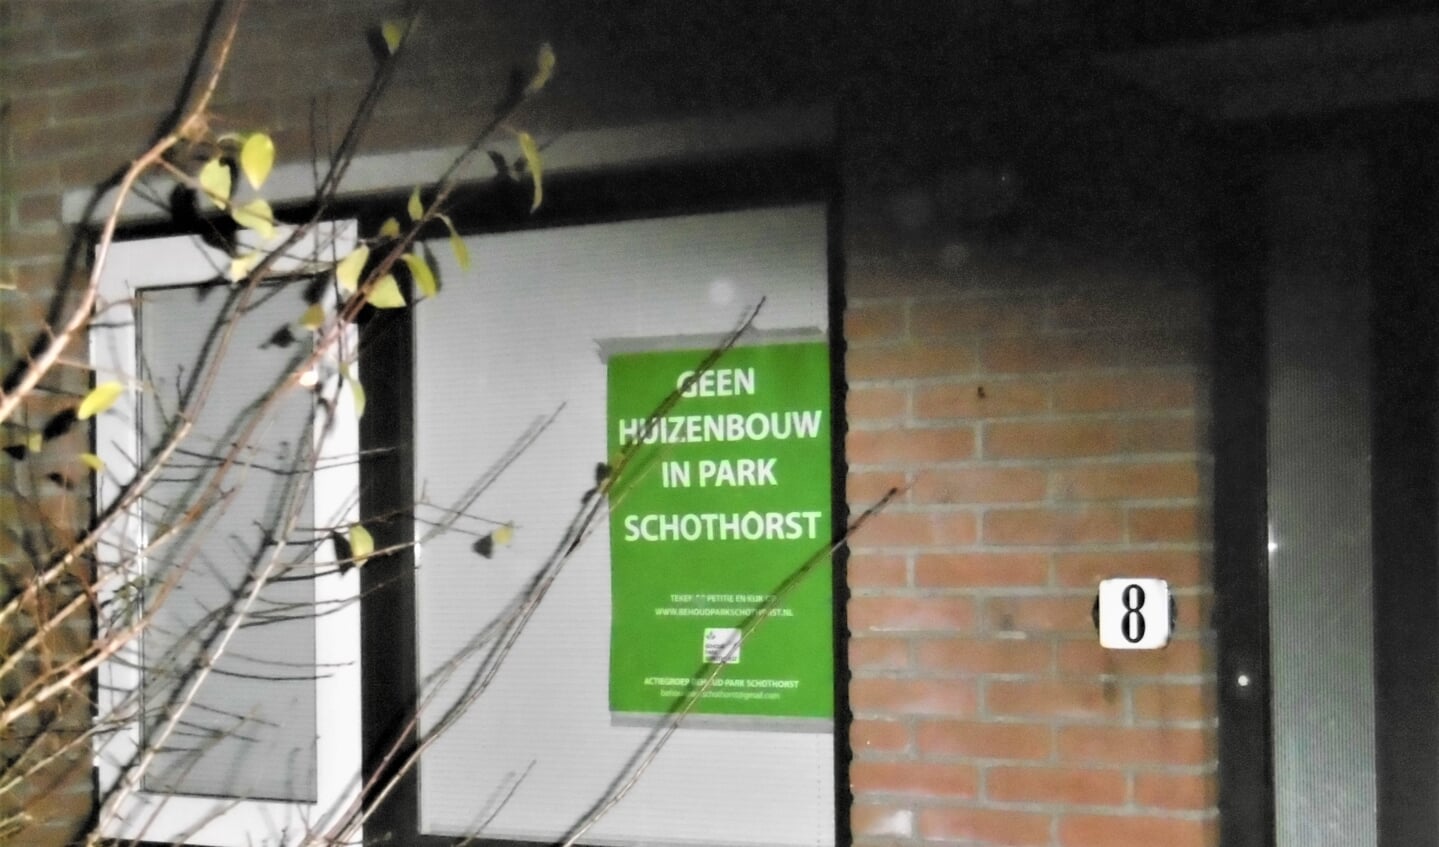 Op menig adres is de poster te vinden met 'Geen huizenbouw in Park Schothorst'. 